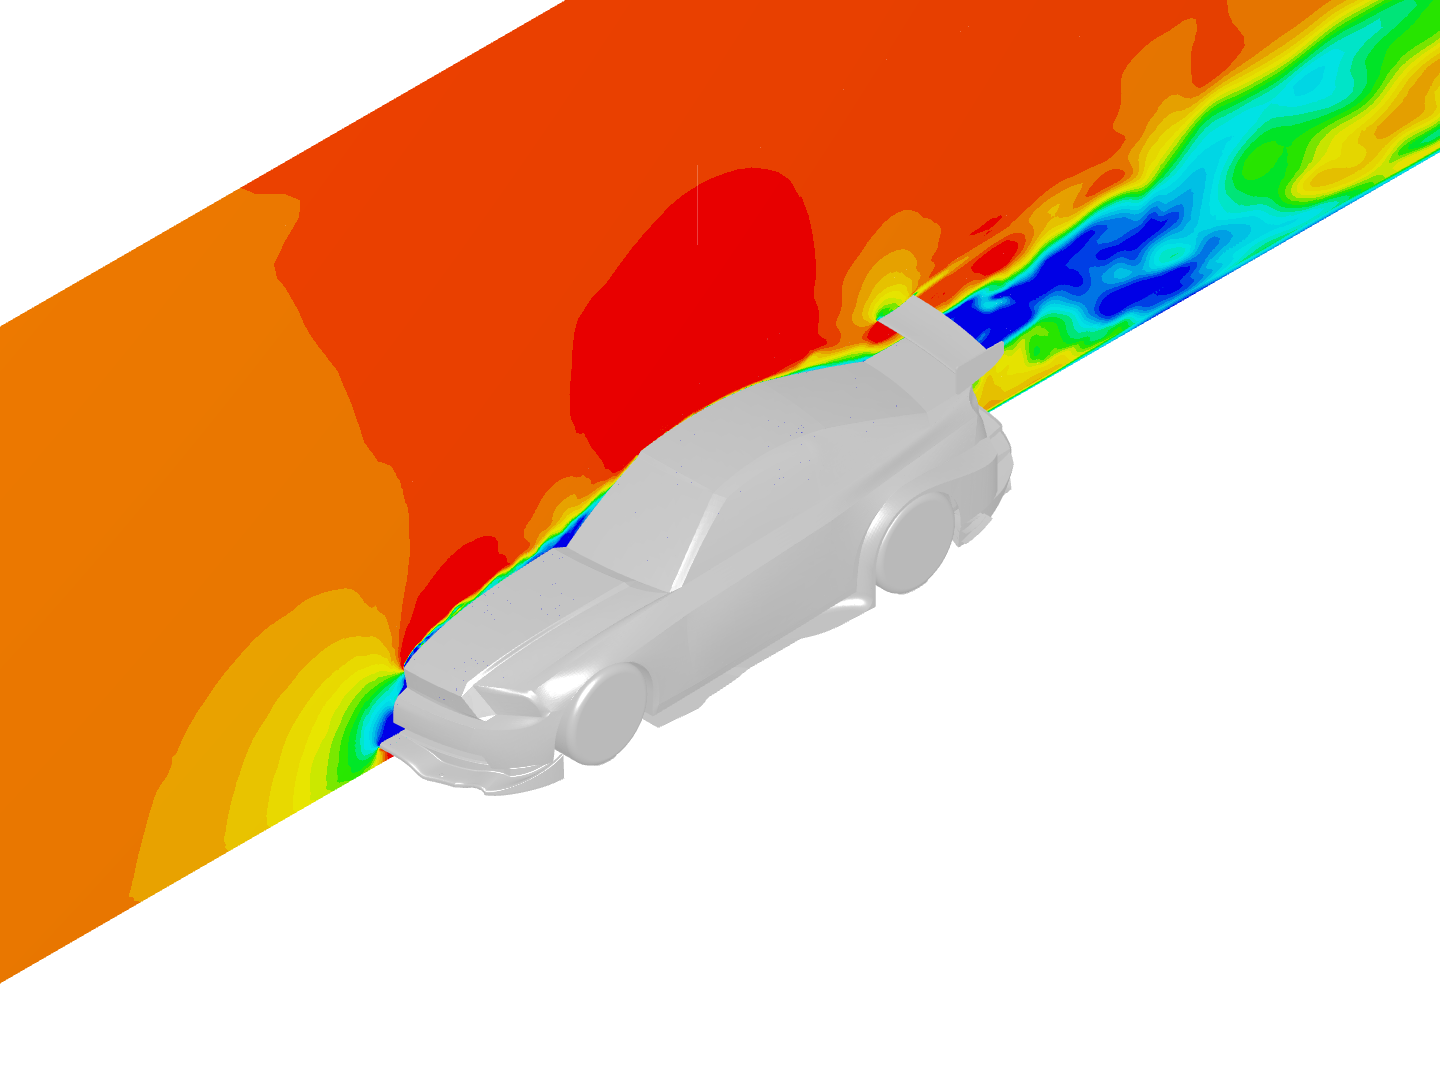 Mustang External Aerodynamics Analysis - Copy image